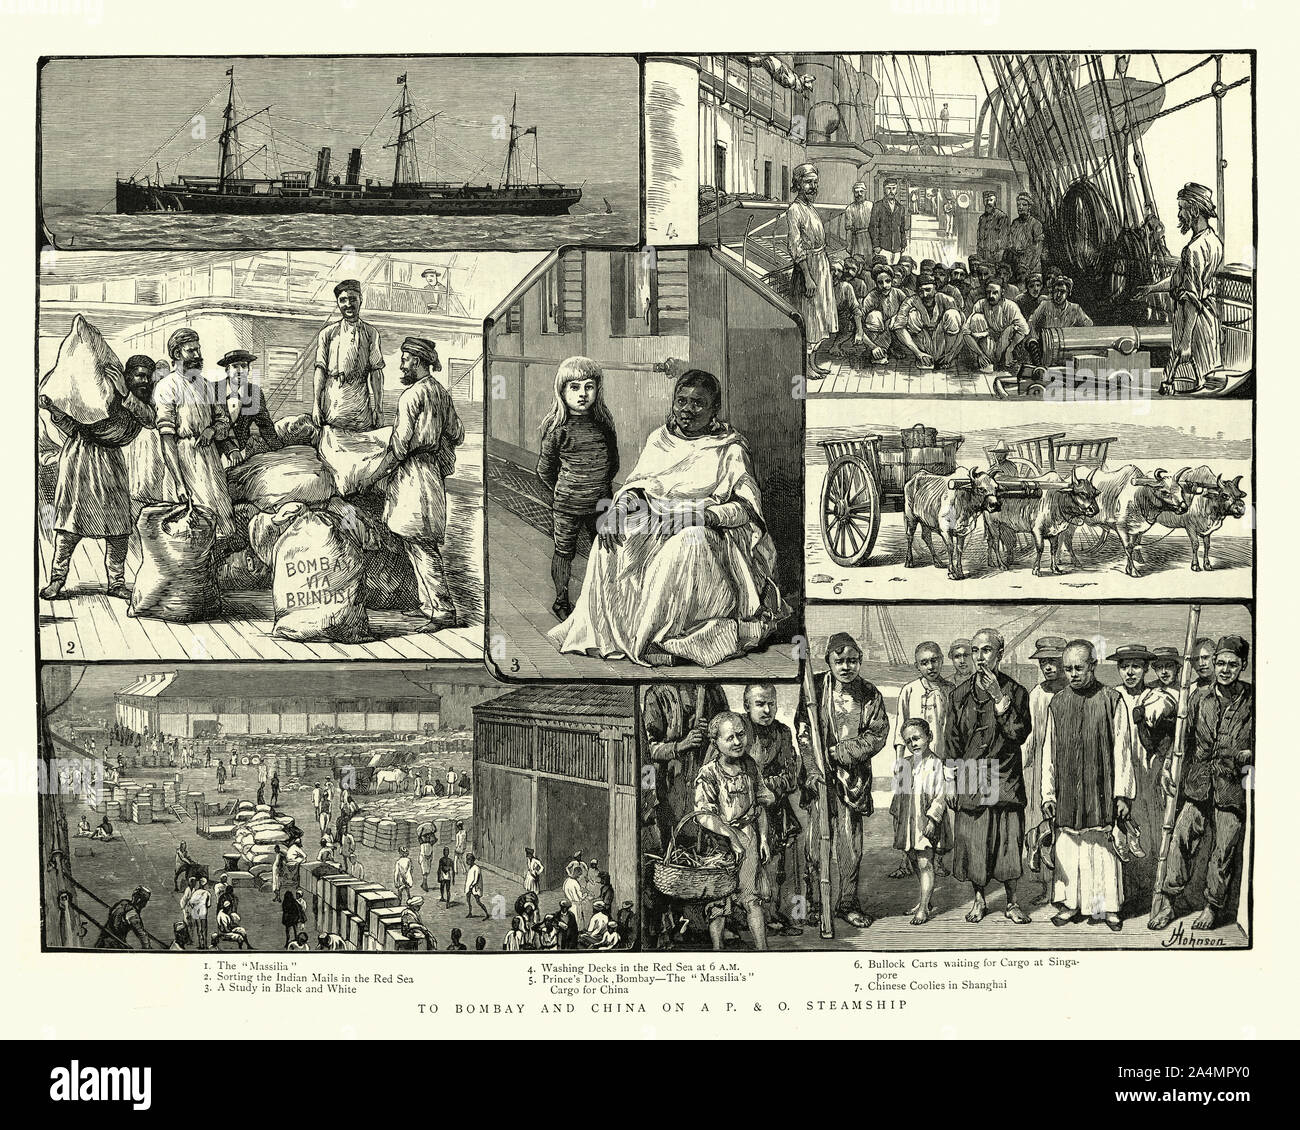 Gravure d'époque de scènes à partir d'un voyage de Bombay à la Chine sur un victorian (P&O) steamship, 19e siècle Banque D'Images